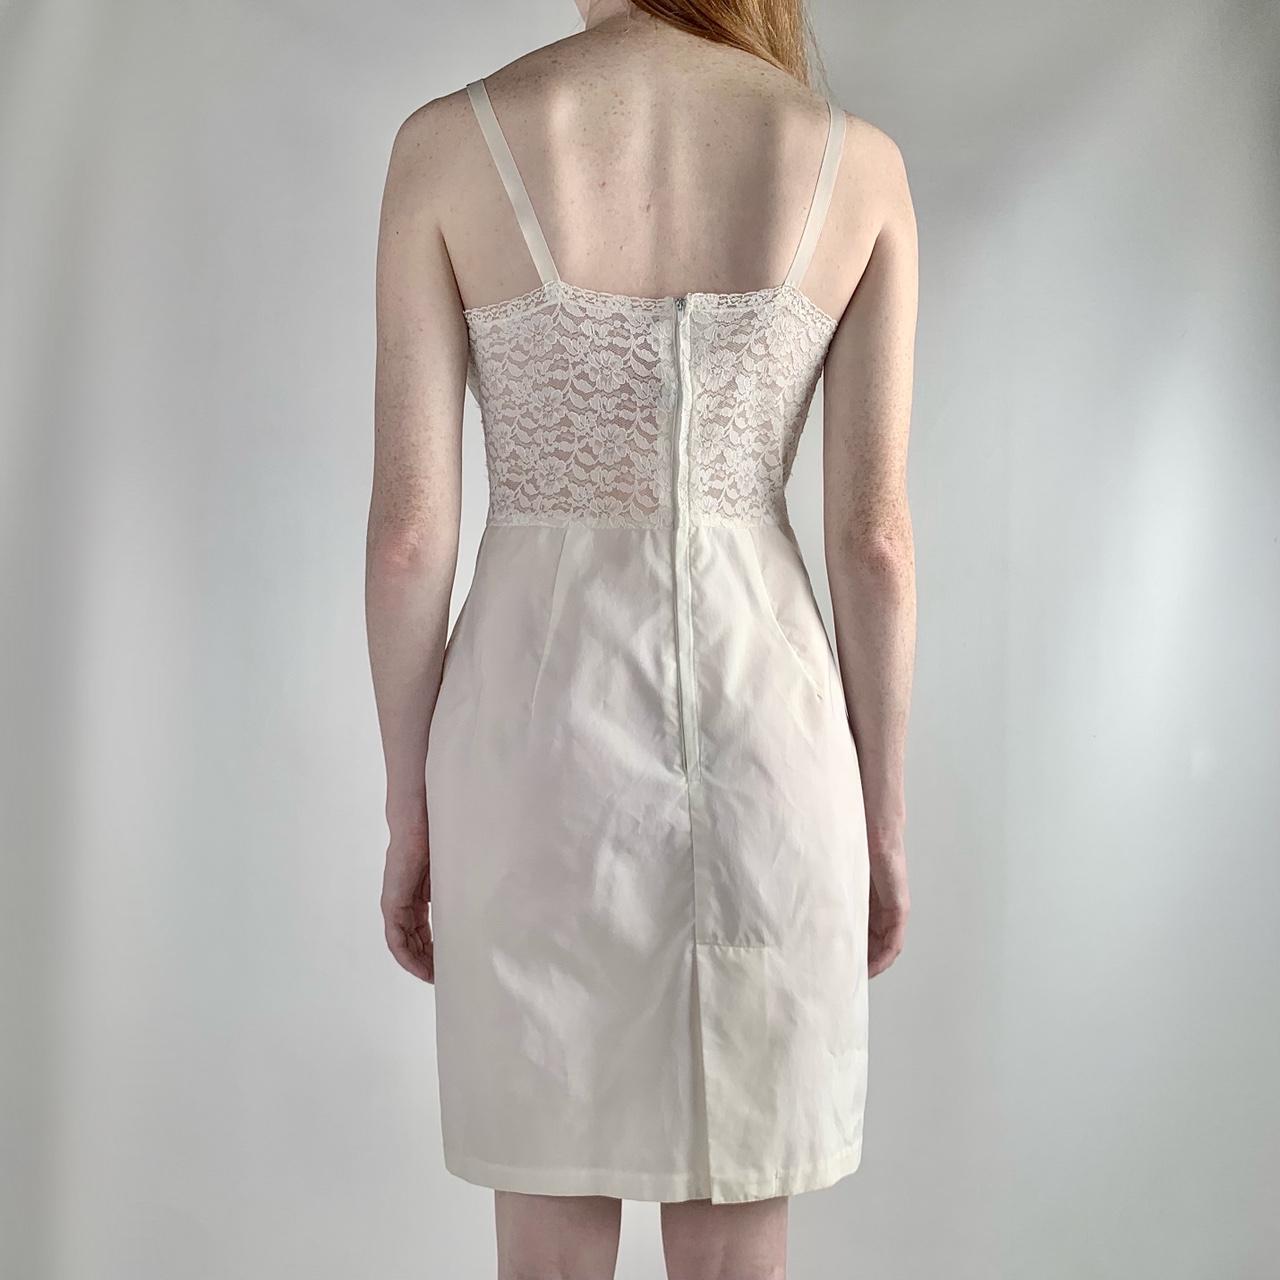 Women's Cream and White Dress (3)